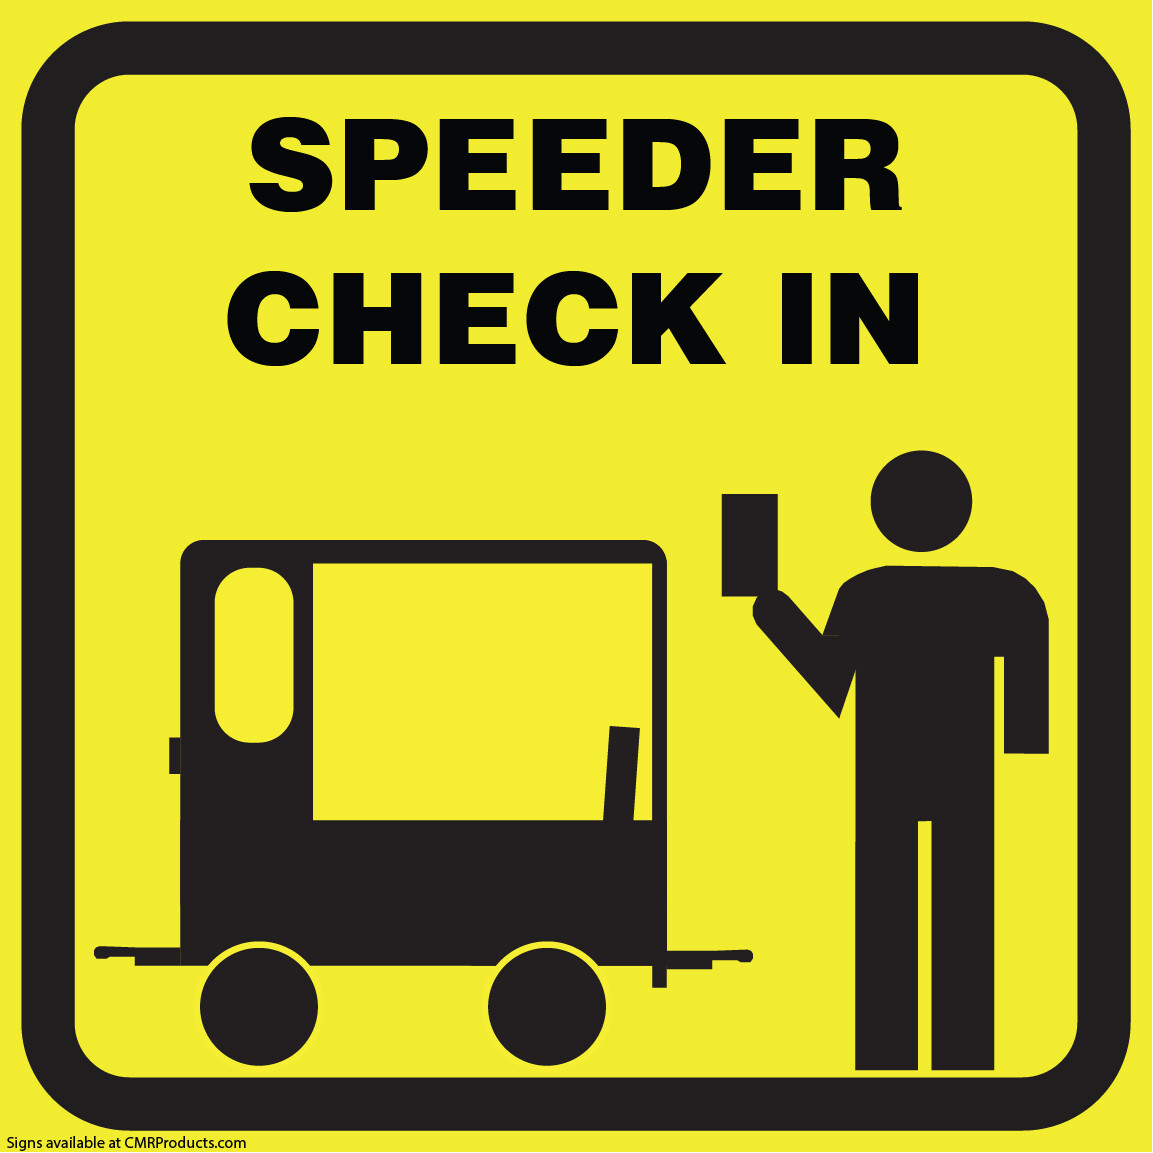 Speeder Check in Sign